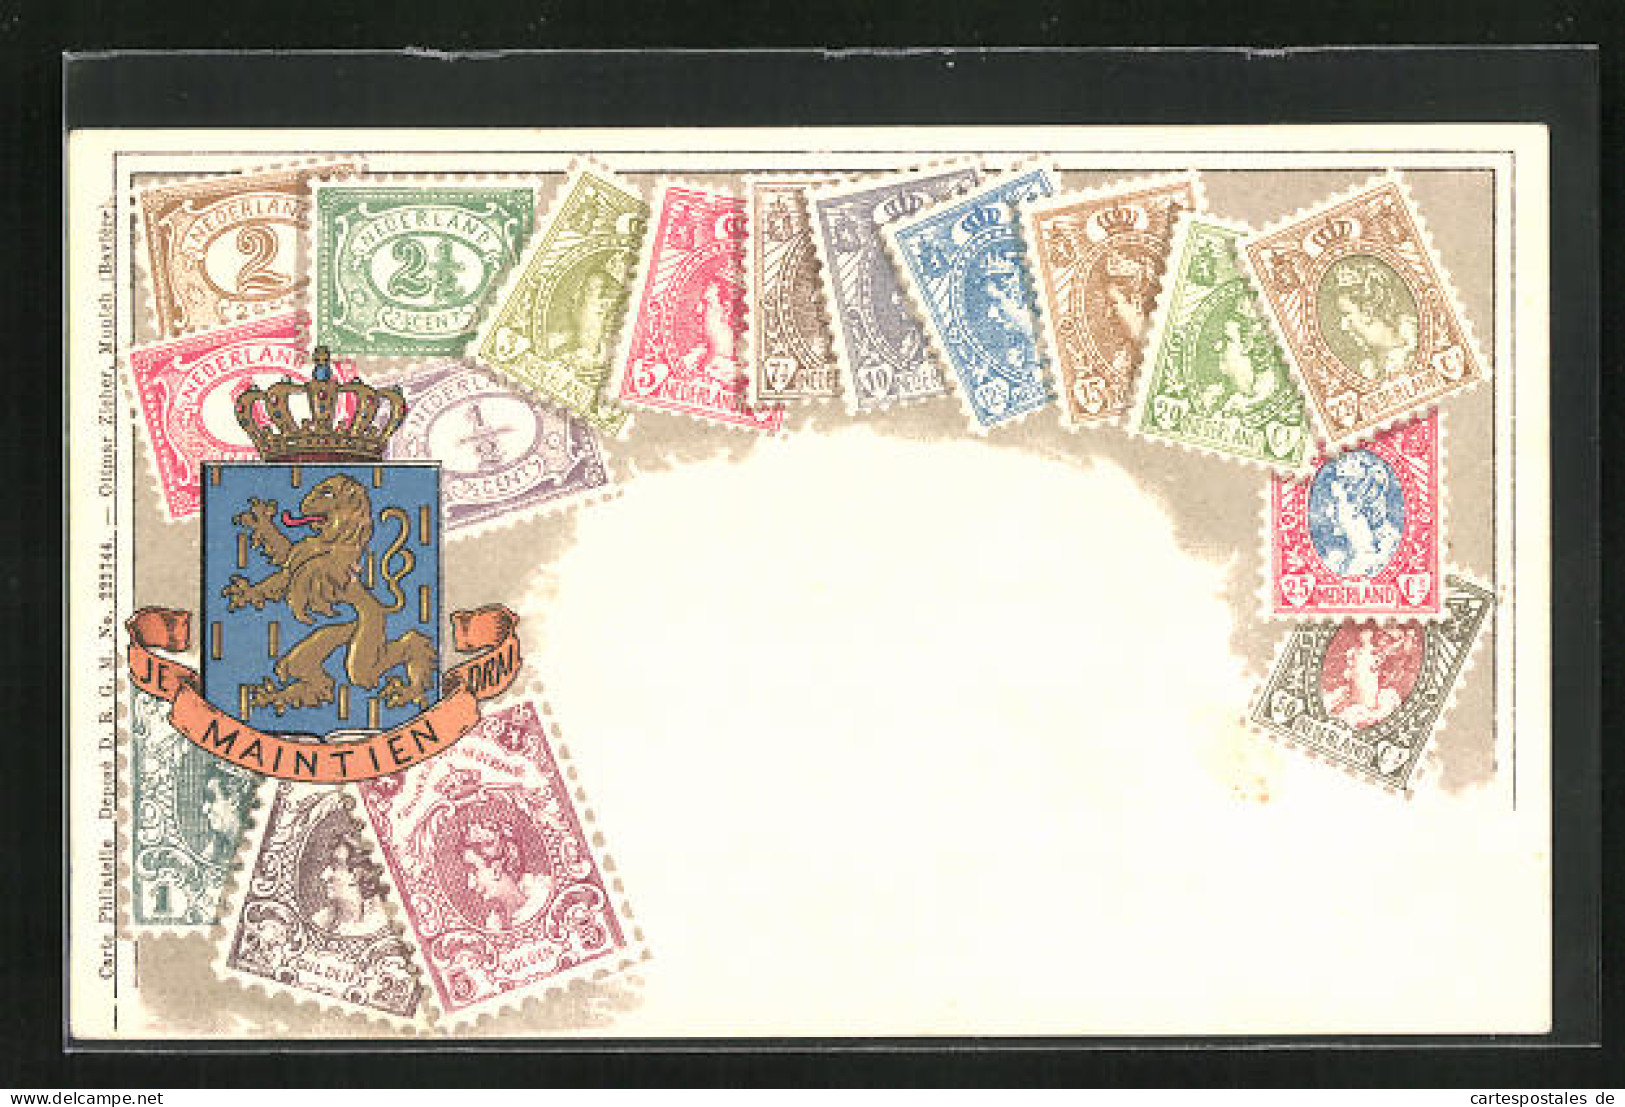 Präge-Lithographie Briefmarken Der Niederlande, Werte In Gulden, Wappen Mit Goldenem Löwen  - Briefmarken (Abbildungen)